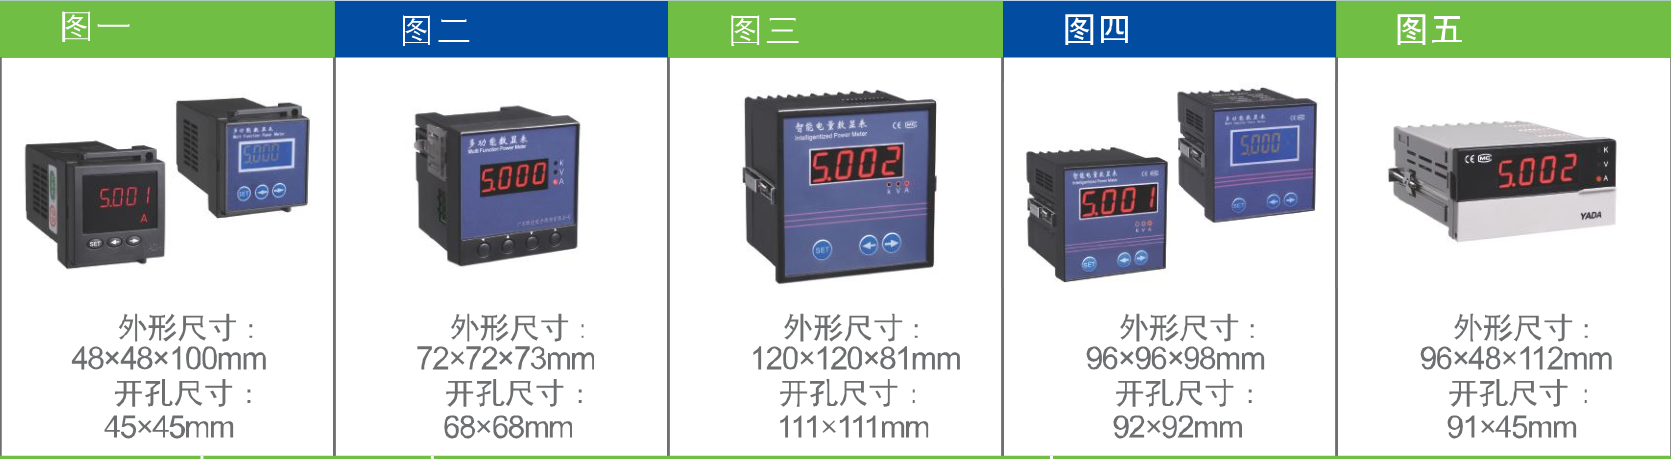 综合信号|转速|压力|温度信号显示仪选型大全技术参数可以选择汉德尔电气